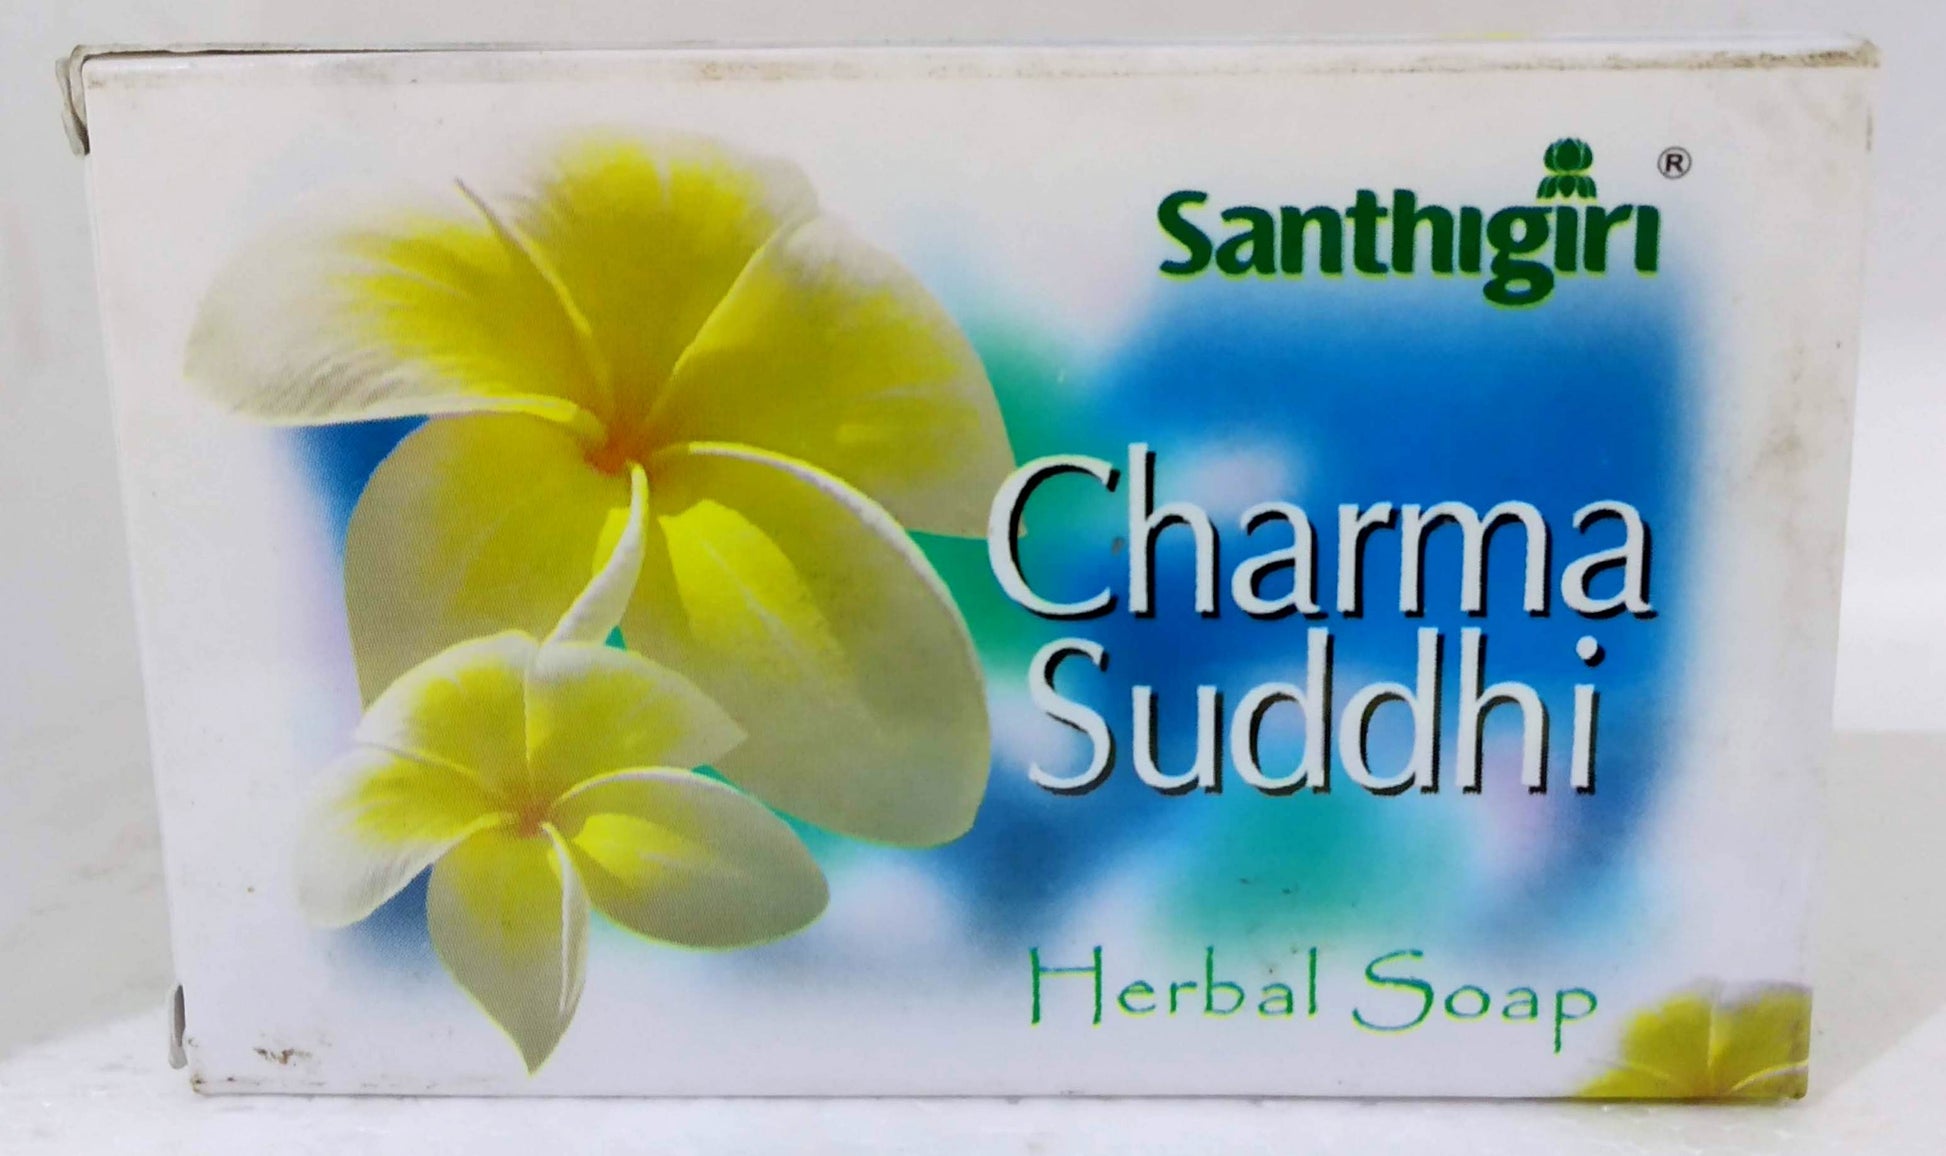 Shop Santhigiri Charma Suddhi Soap 75gm at price 30.00 from Santhigiri Online - Ayush Care